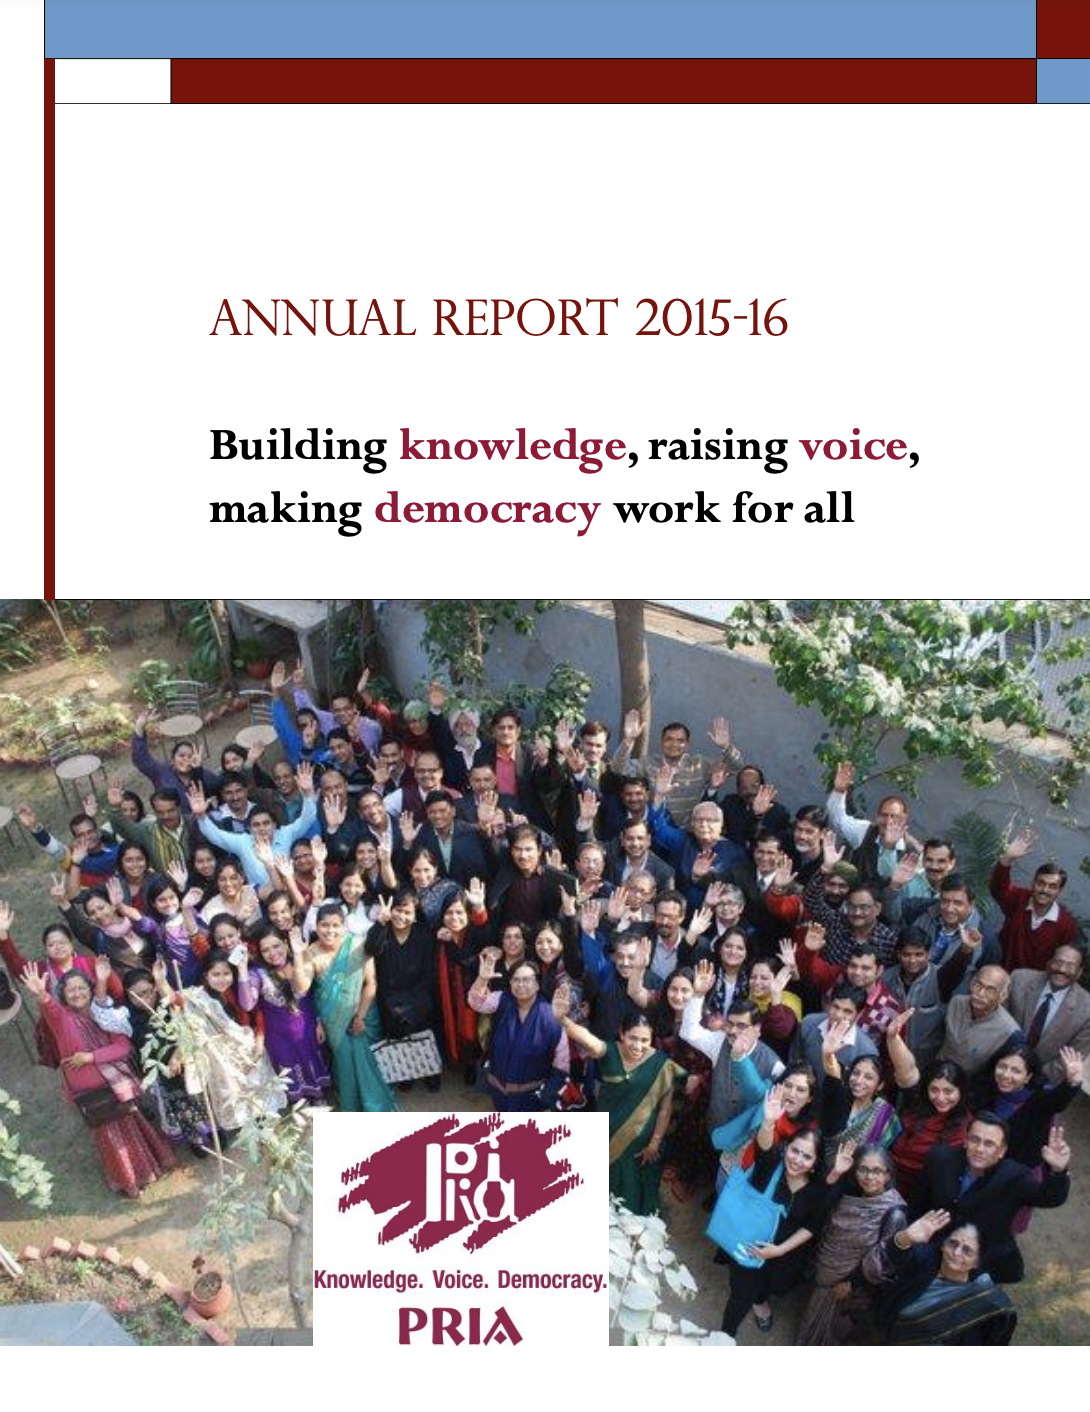 34th Annual Report 2015-16